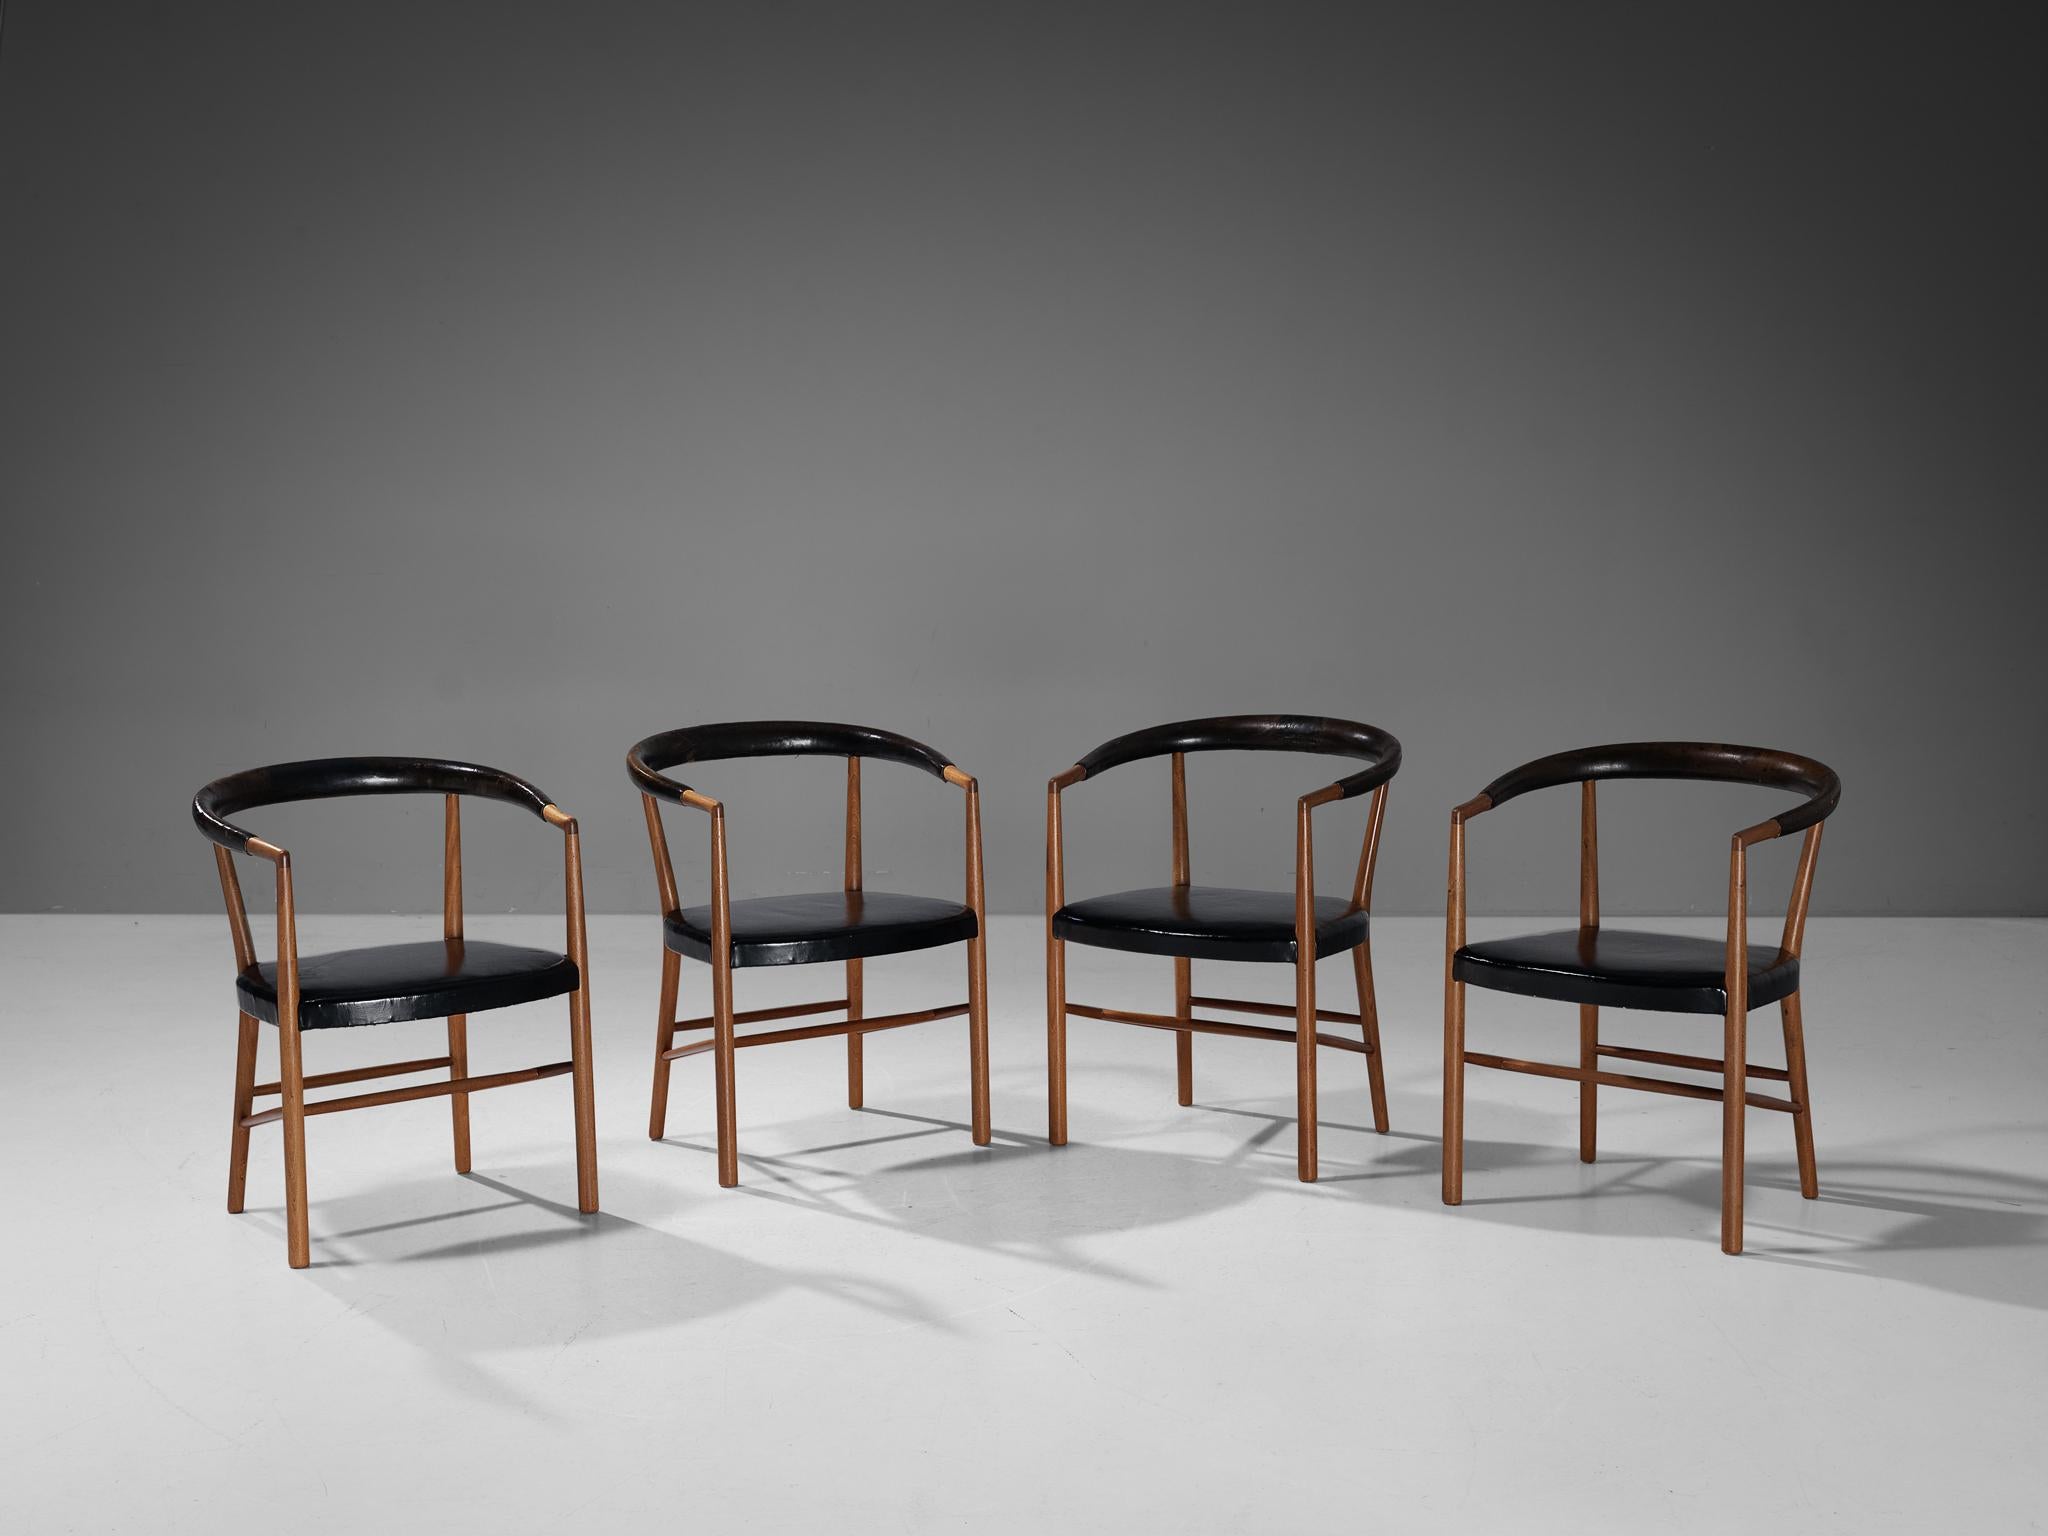 Jabob Kjær for Jacob Kjær Møbelhaandværk, set of four 'UN' armchairs model 'B37', original black leather, mahogany, Denmark, design 1949, manufactured 1957

Stunning set of 'UN' chairs by Jacob Kjær manufactured in 1957. The Danish designer Jacob